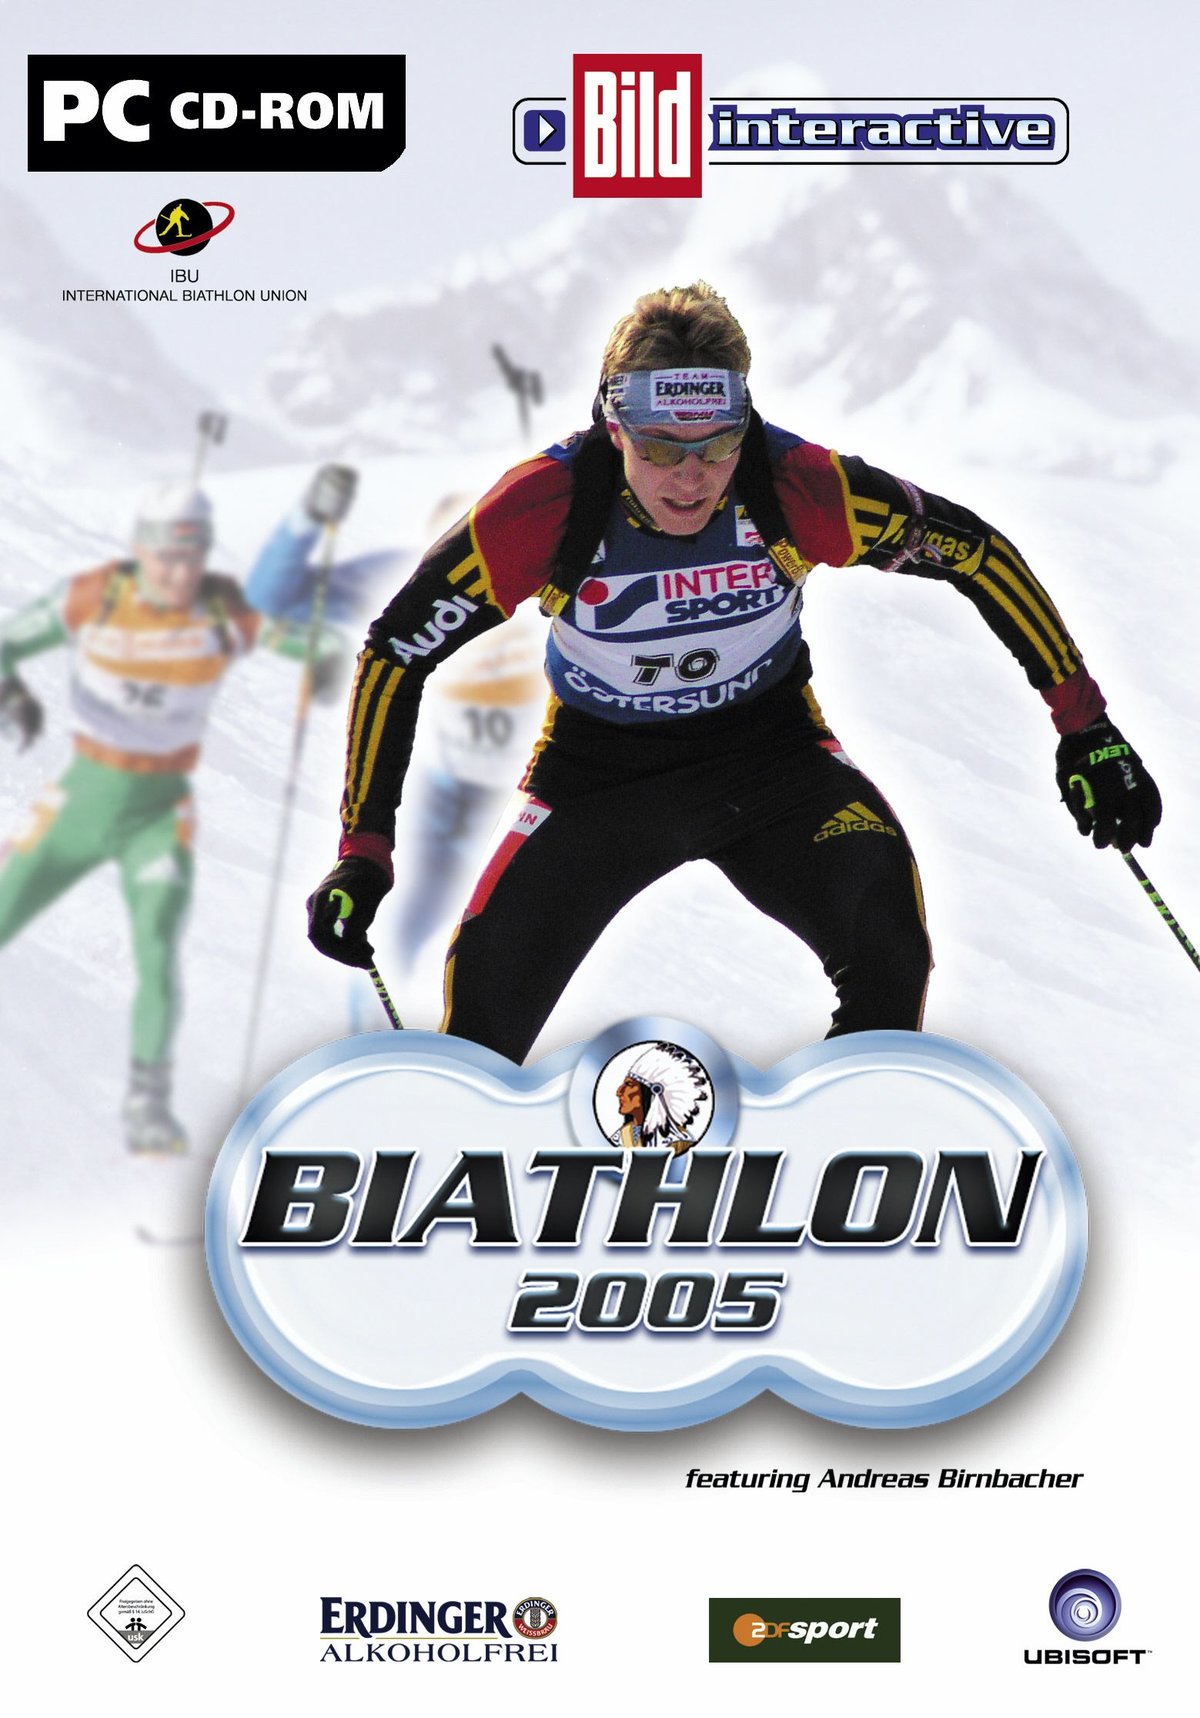 Biathlon 2005 von Ubi Soft